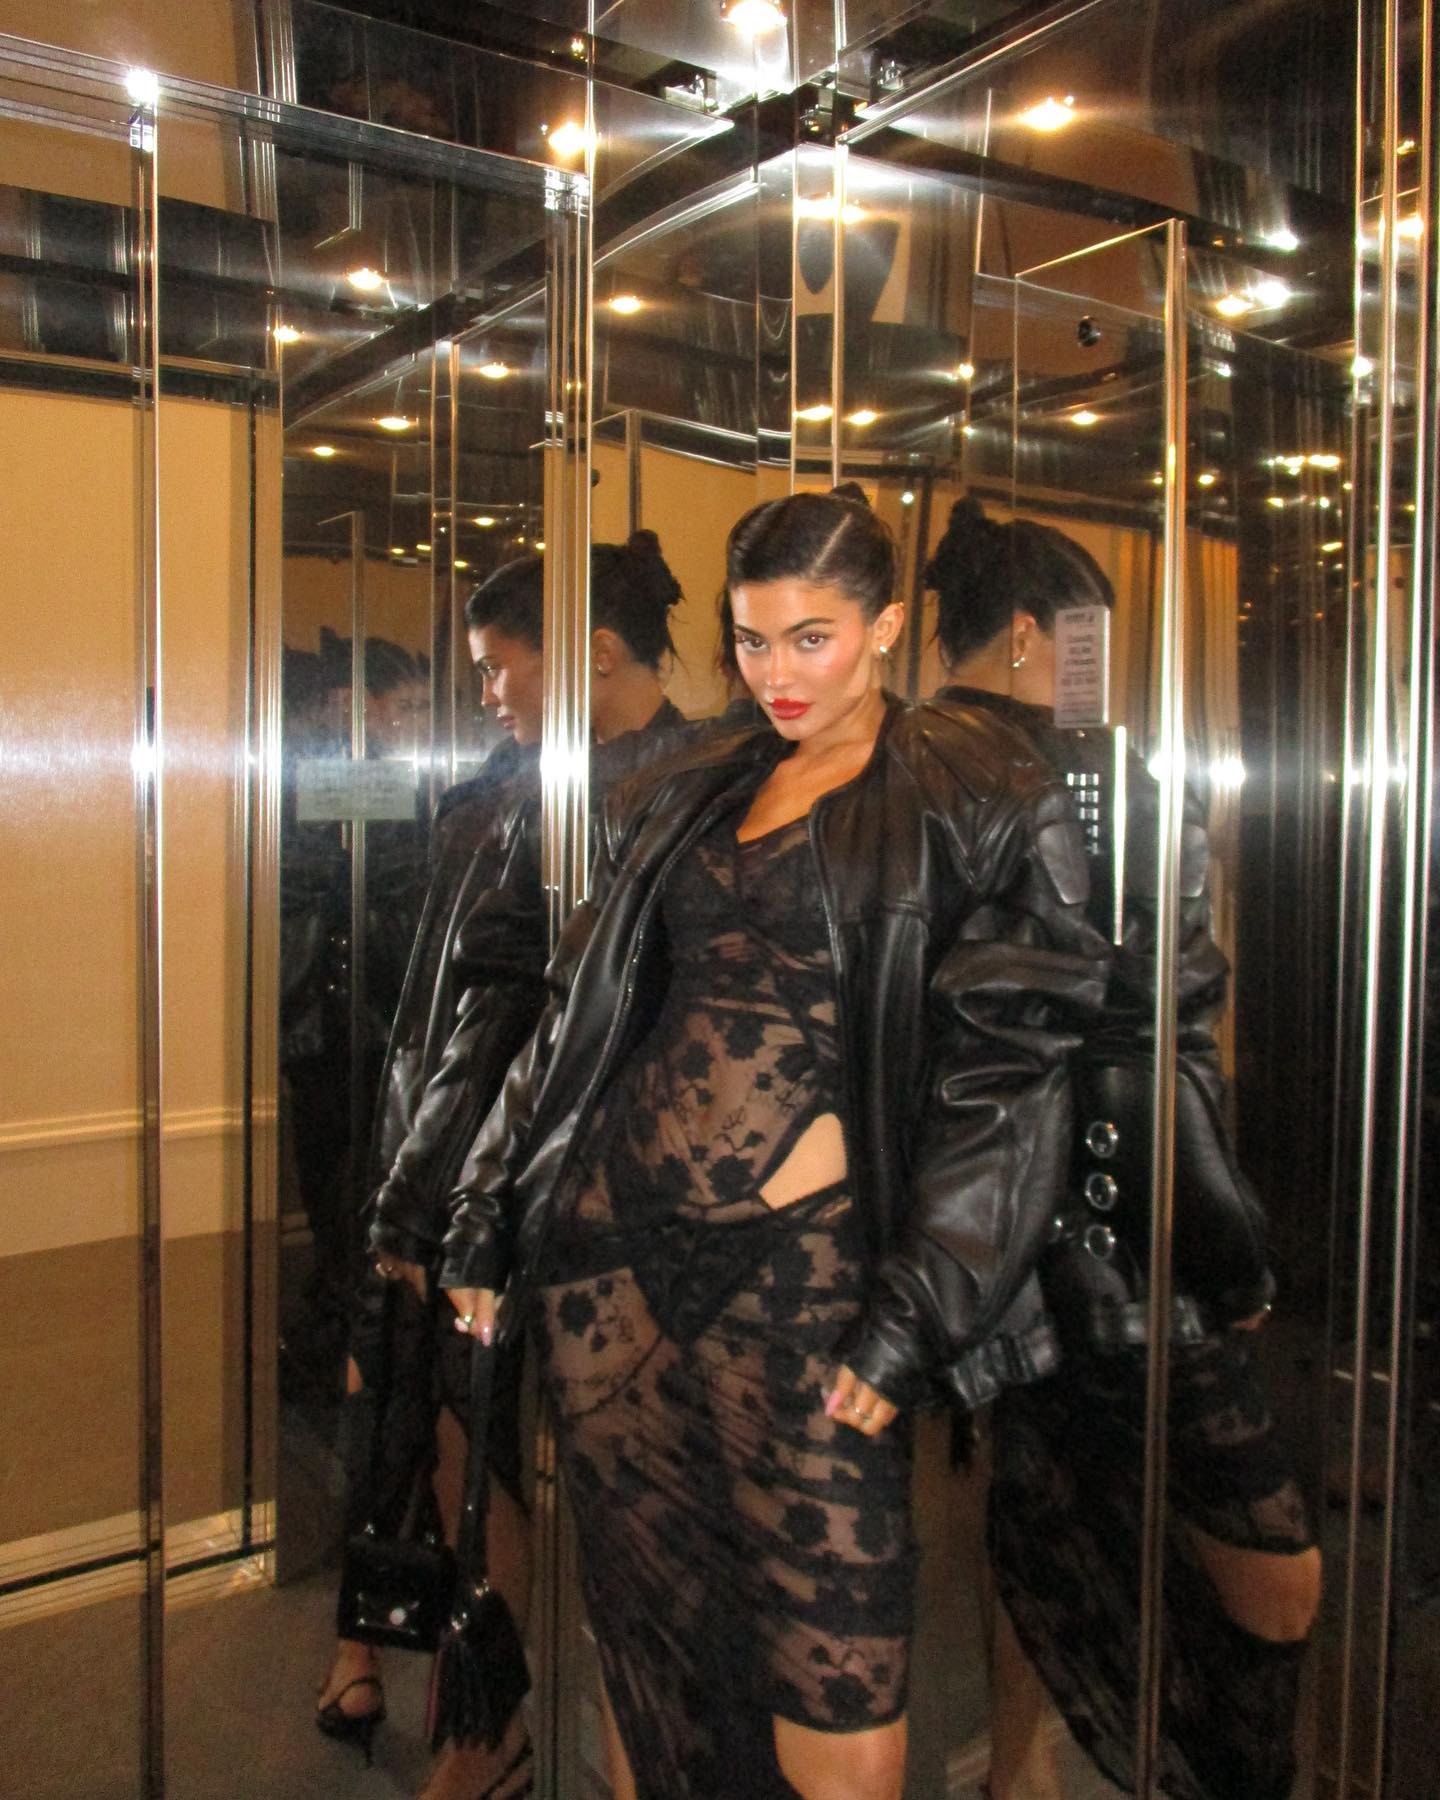 FOTOS El look de ltex de Kylie Jenner en Pars! - Photo 34